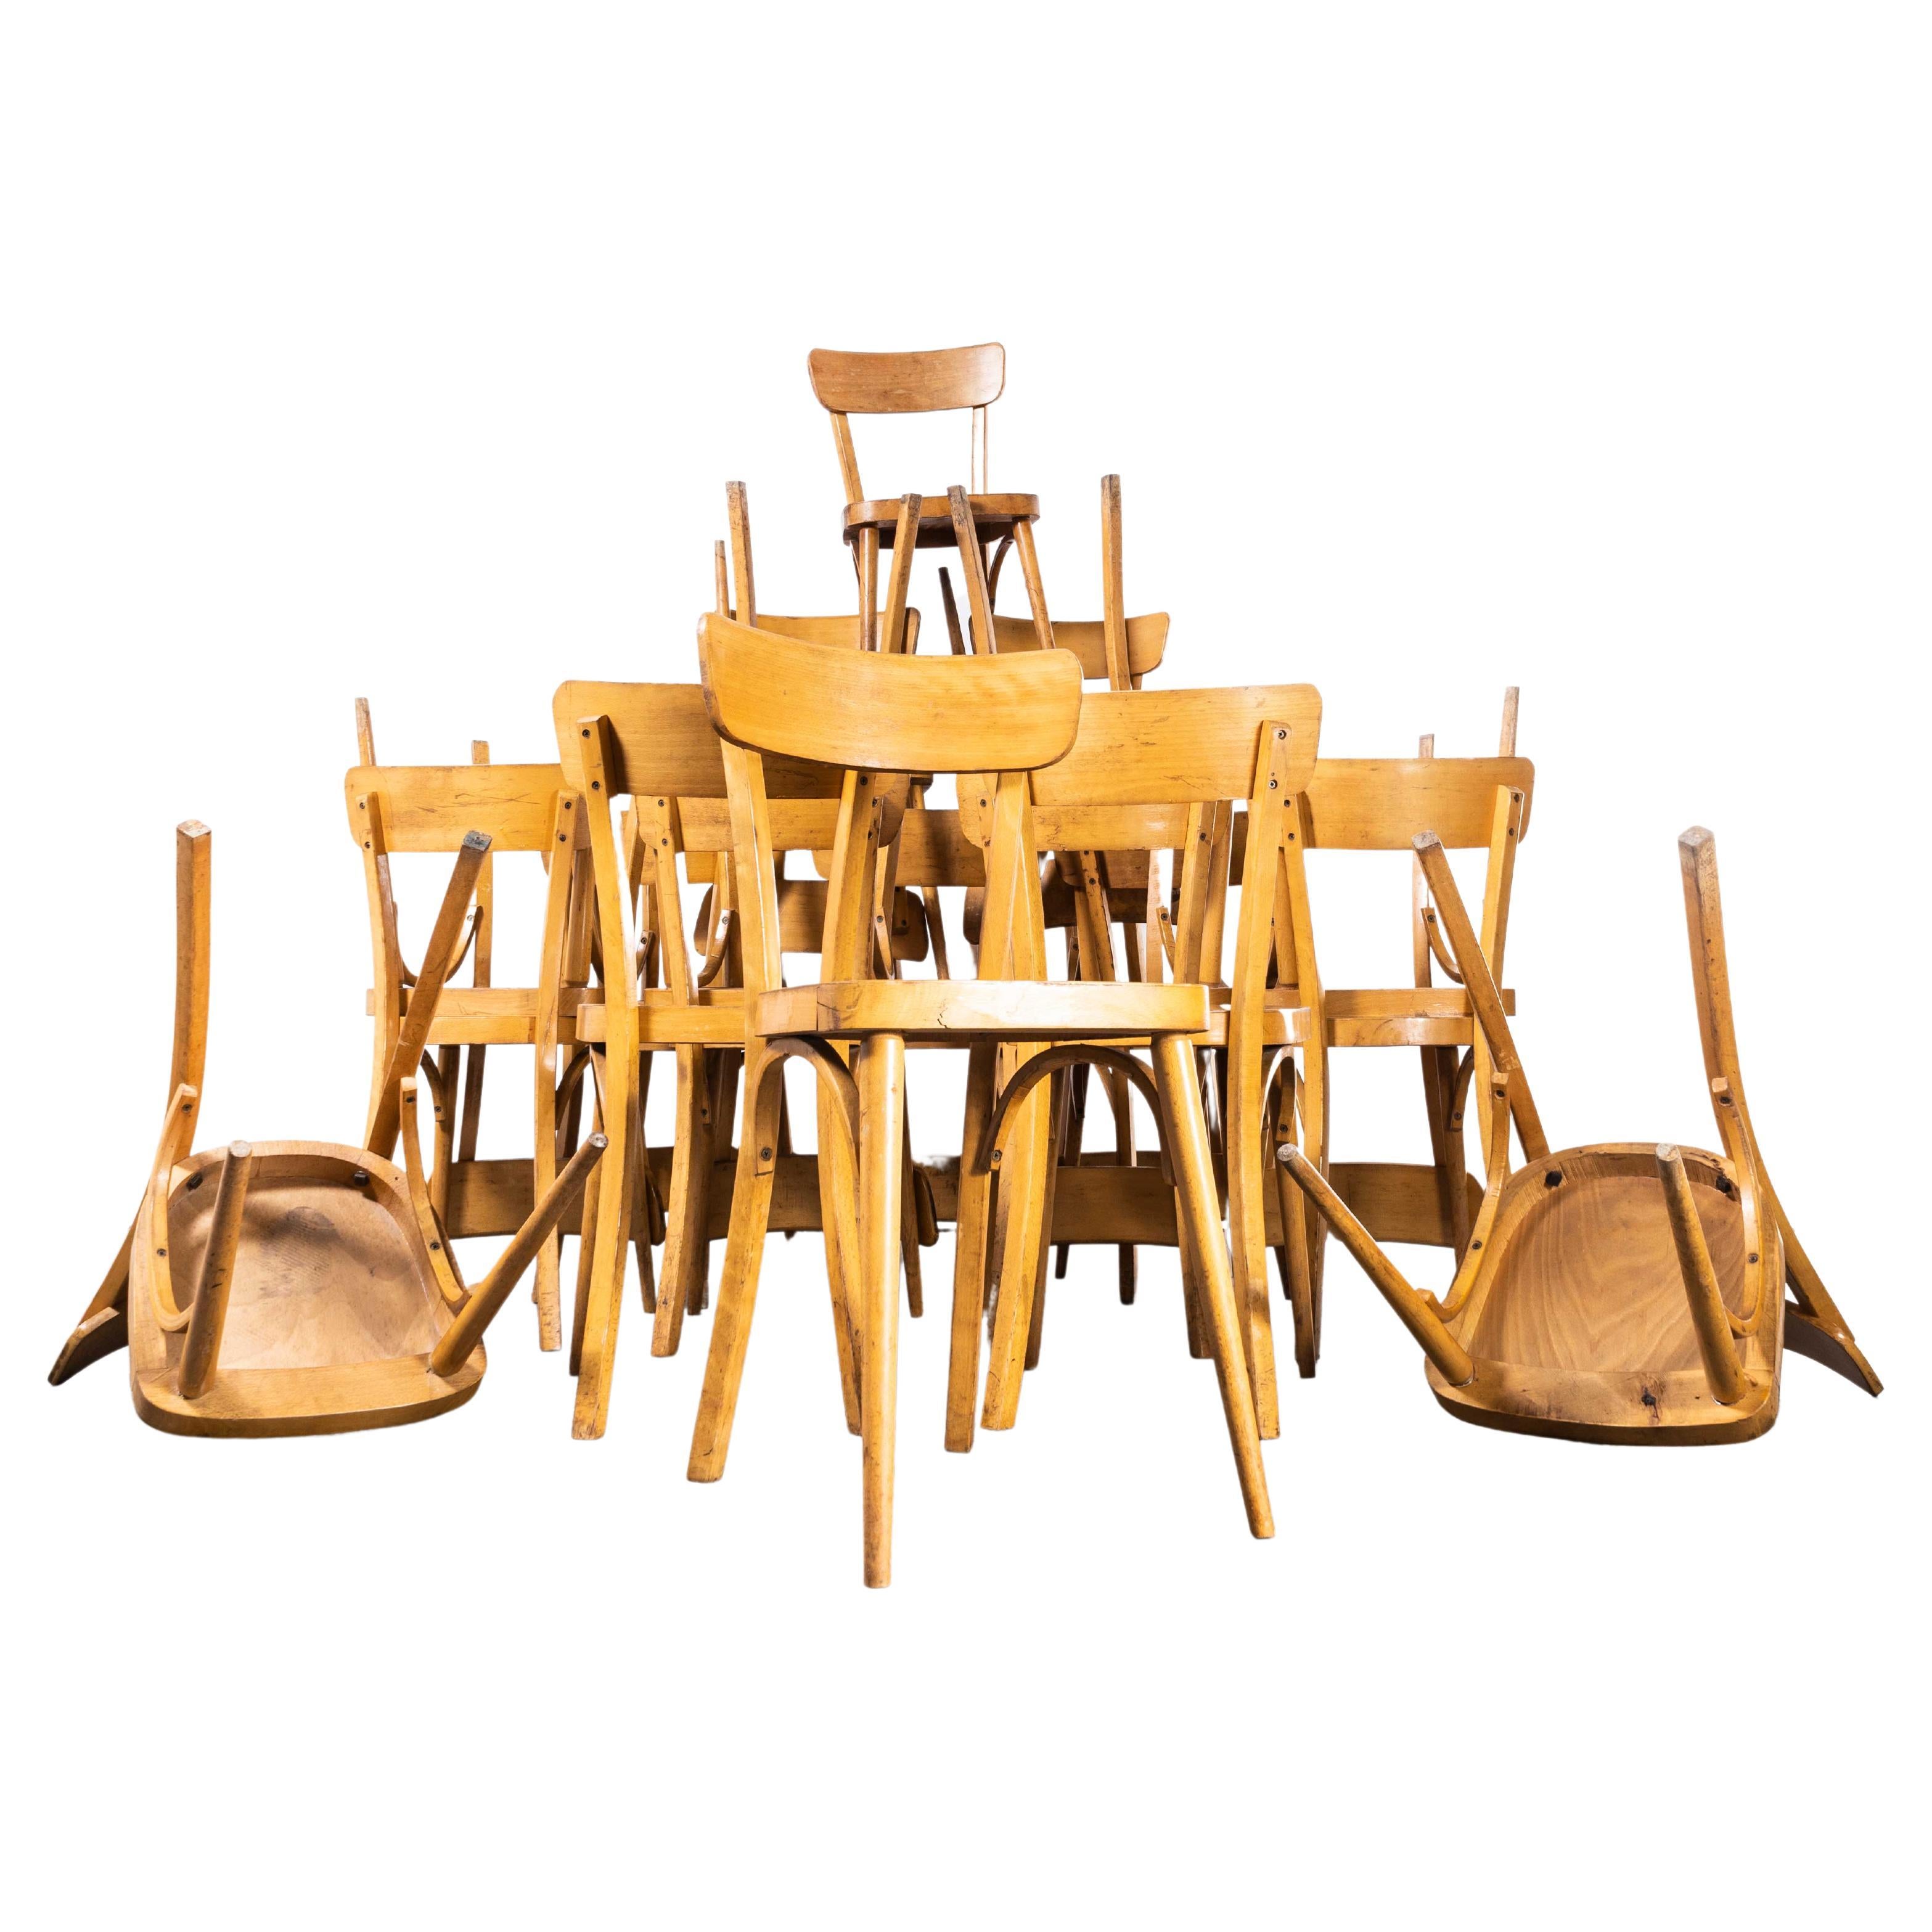 Chaises de salle à manger françaises Baumann des années 1950, à pieds ronds et blonds, différentes Qté